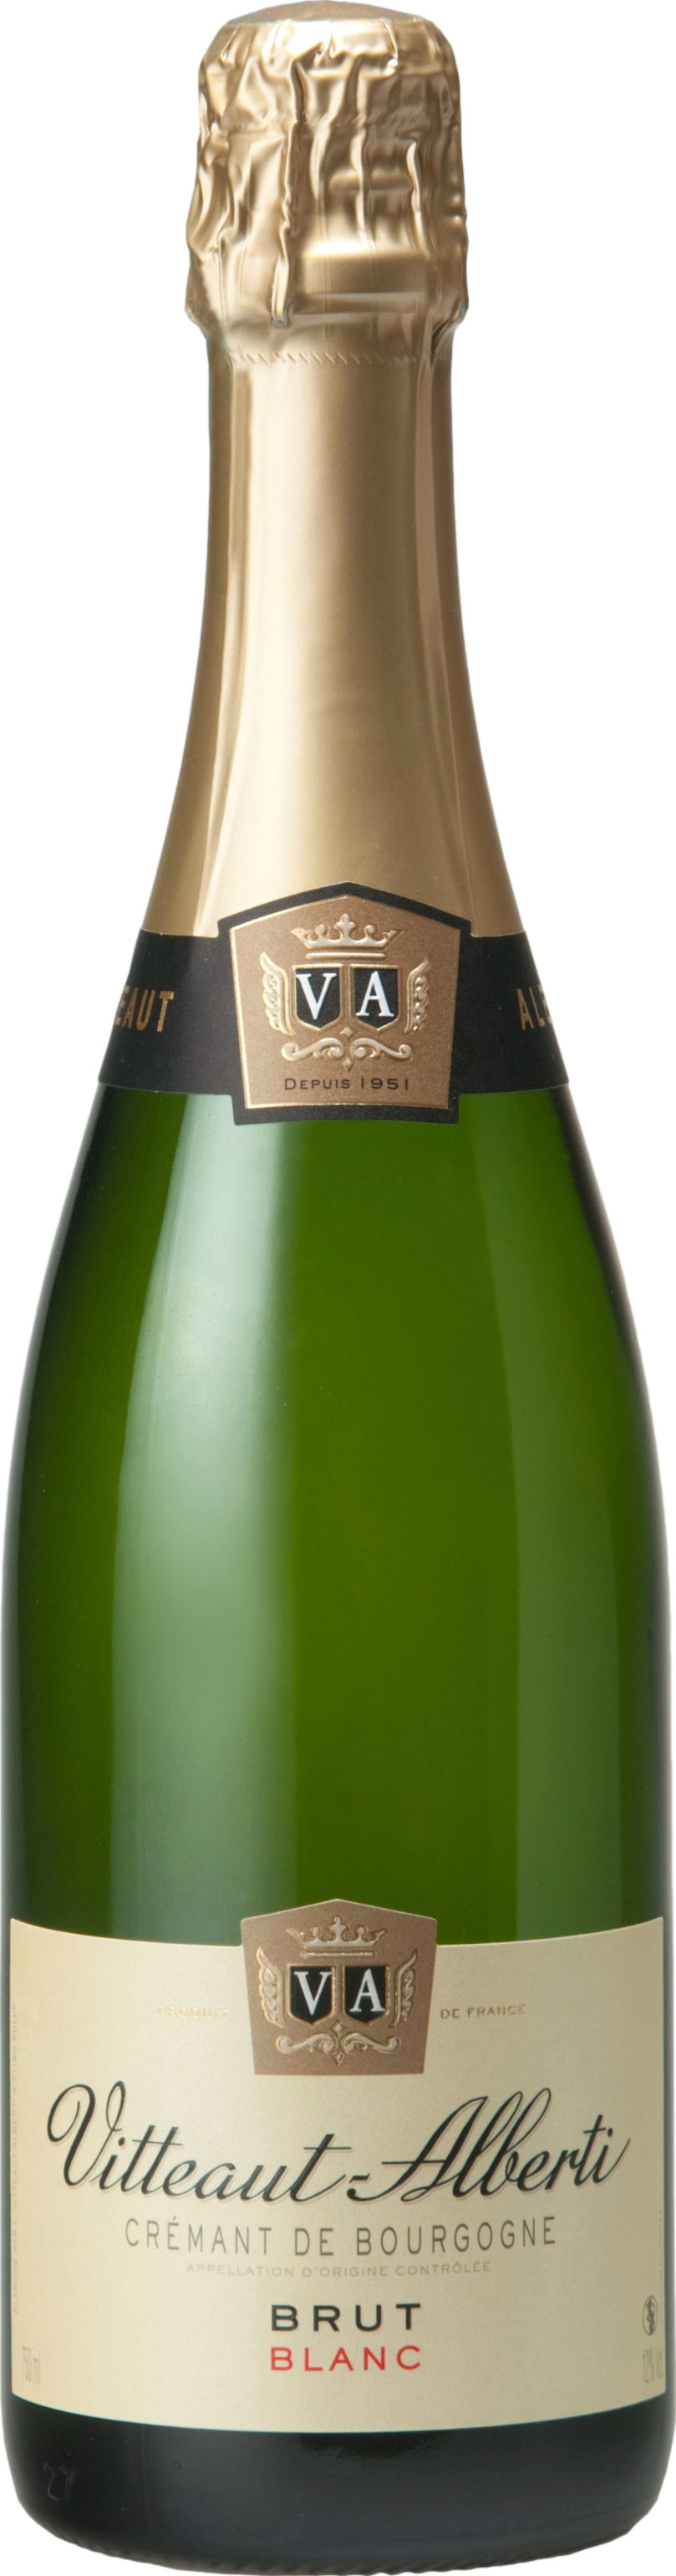 Vitteaut-Alberti Cremant de Bourgogne Brut Šumivé 12.0% 0.75 l